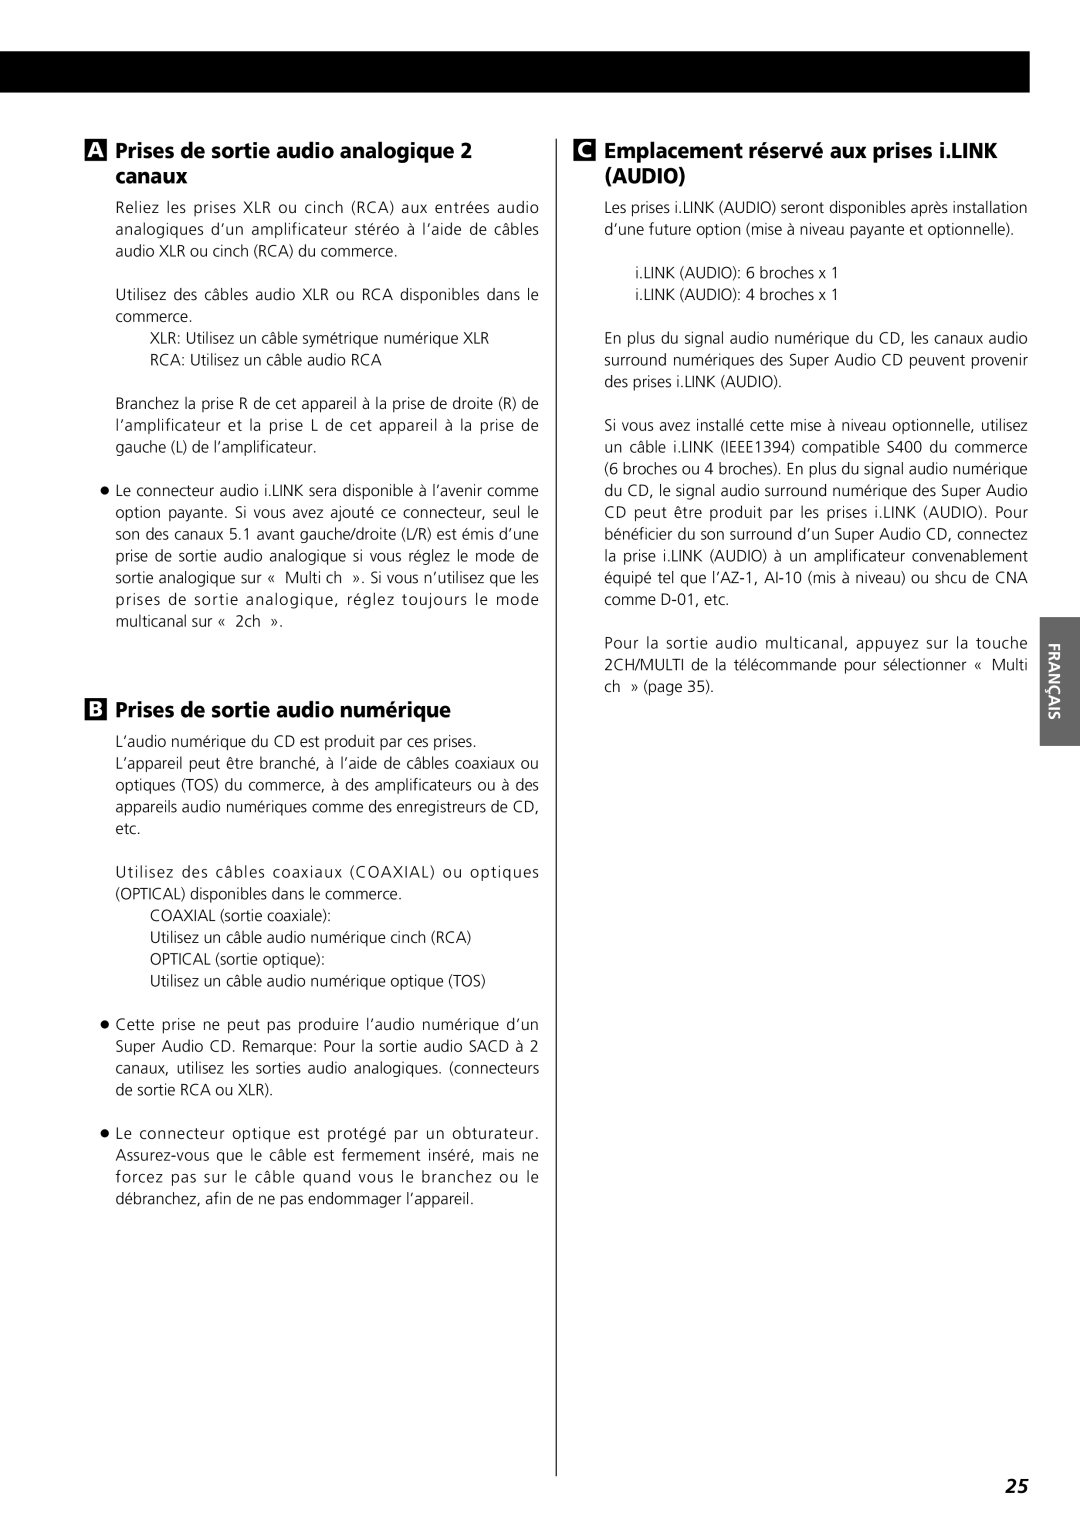 Esoteric X-05 owner manual APrises de sortie audio analogique 2 canaux, BPrises de sortie audio numérique, Français 